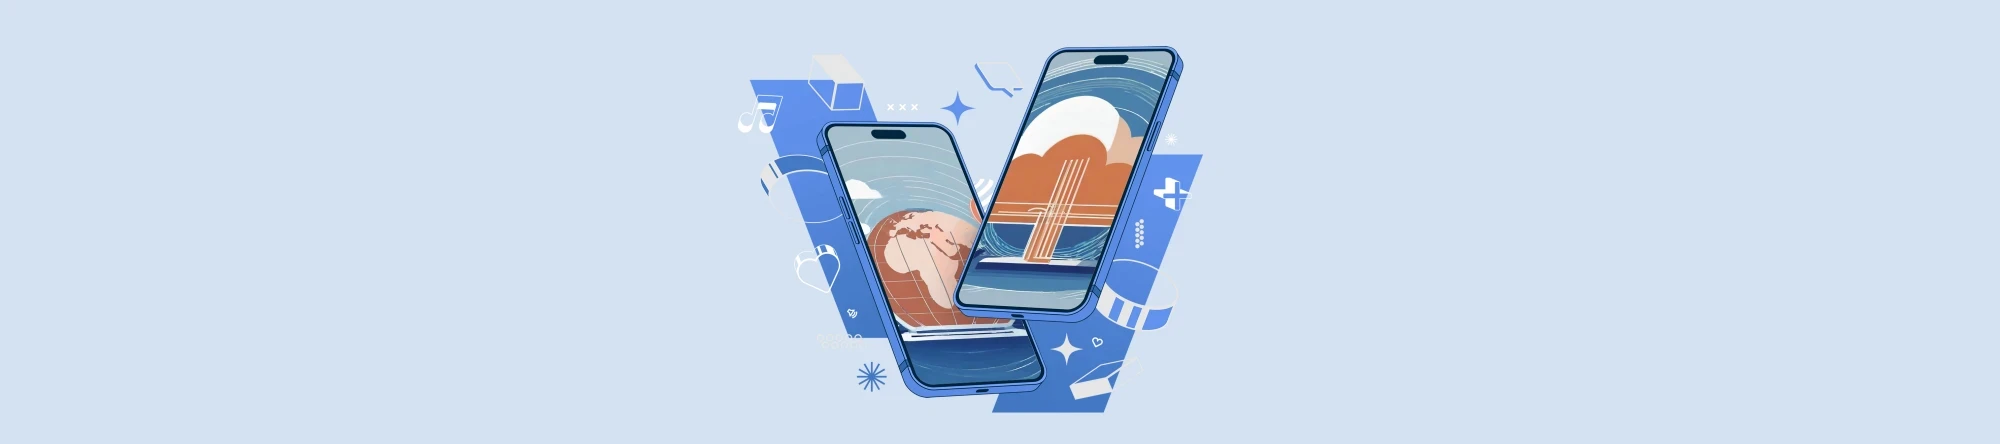 Zwei ki-genierte Smartphones vor einem blauen Hintergrund mit Wolken auf dem Display, welche Cloudcomputing symbolisieren | SPIRIT/21